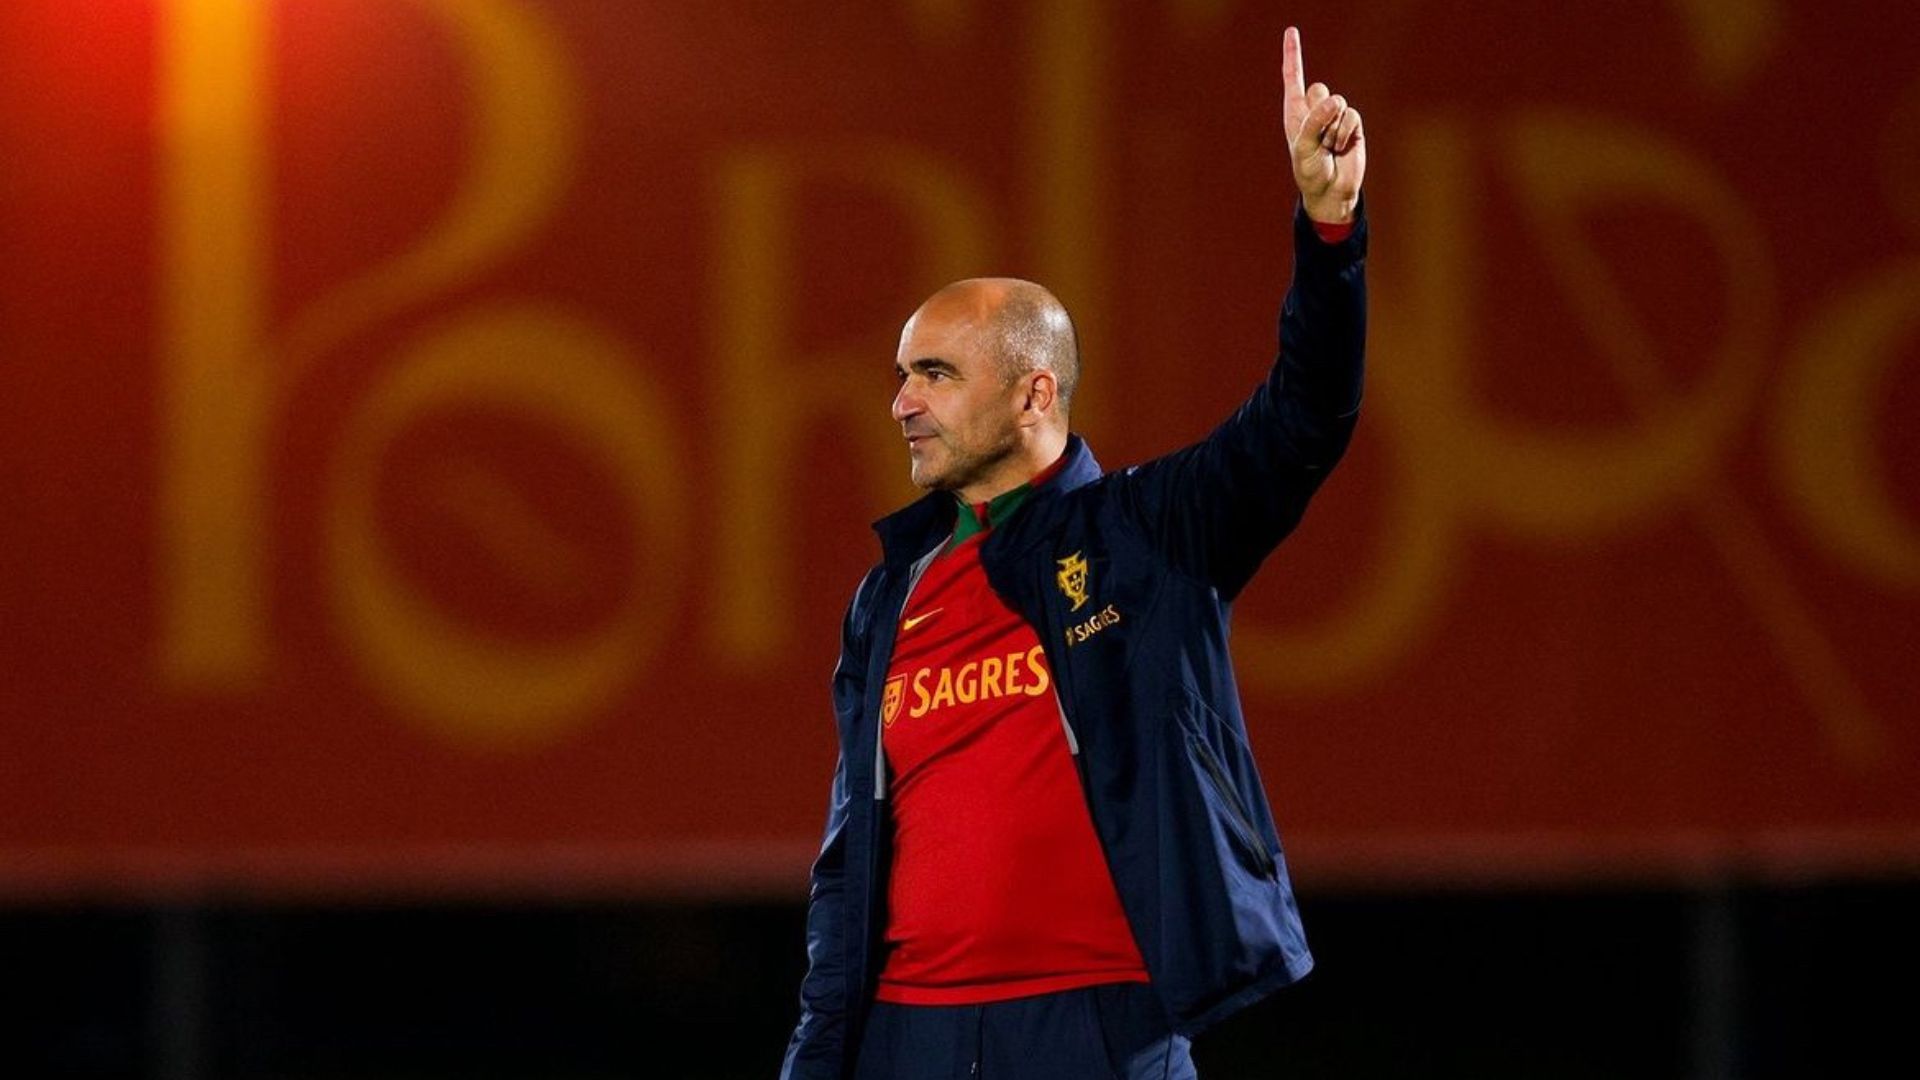 Bekas Jurulatih Wigan, Roberto Martinez Dicanang Kemudi Barcelona